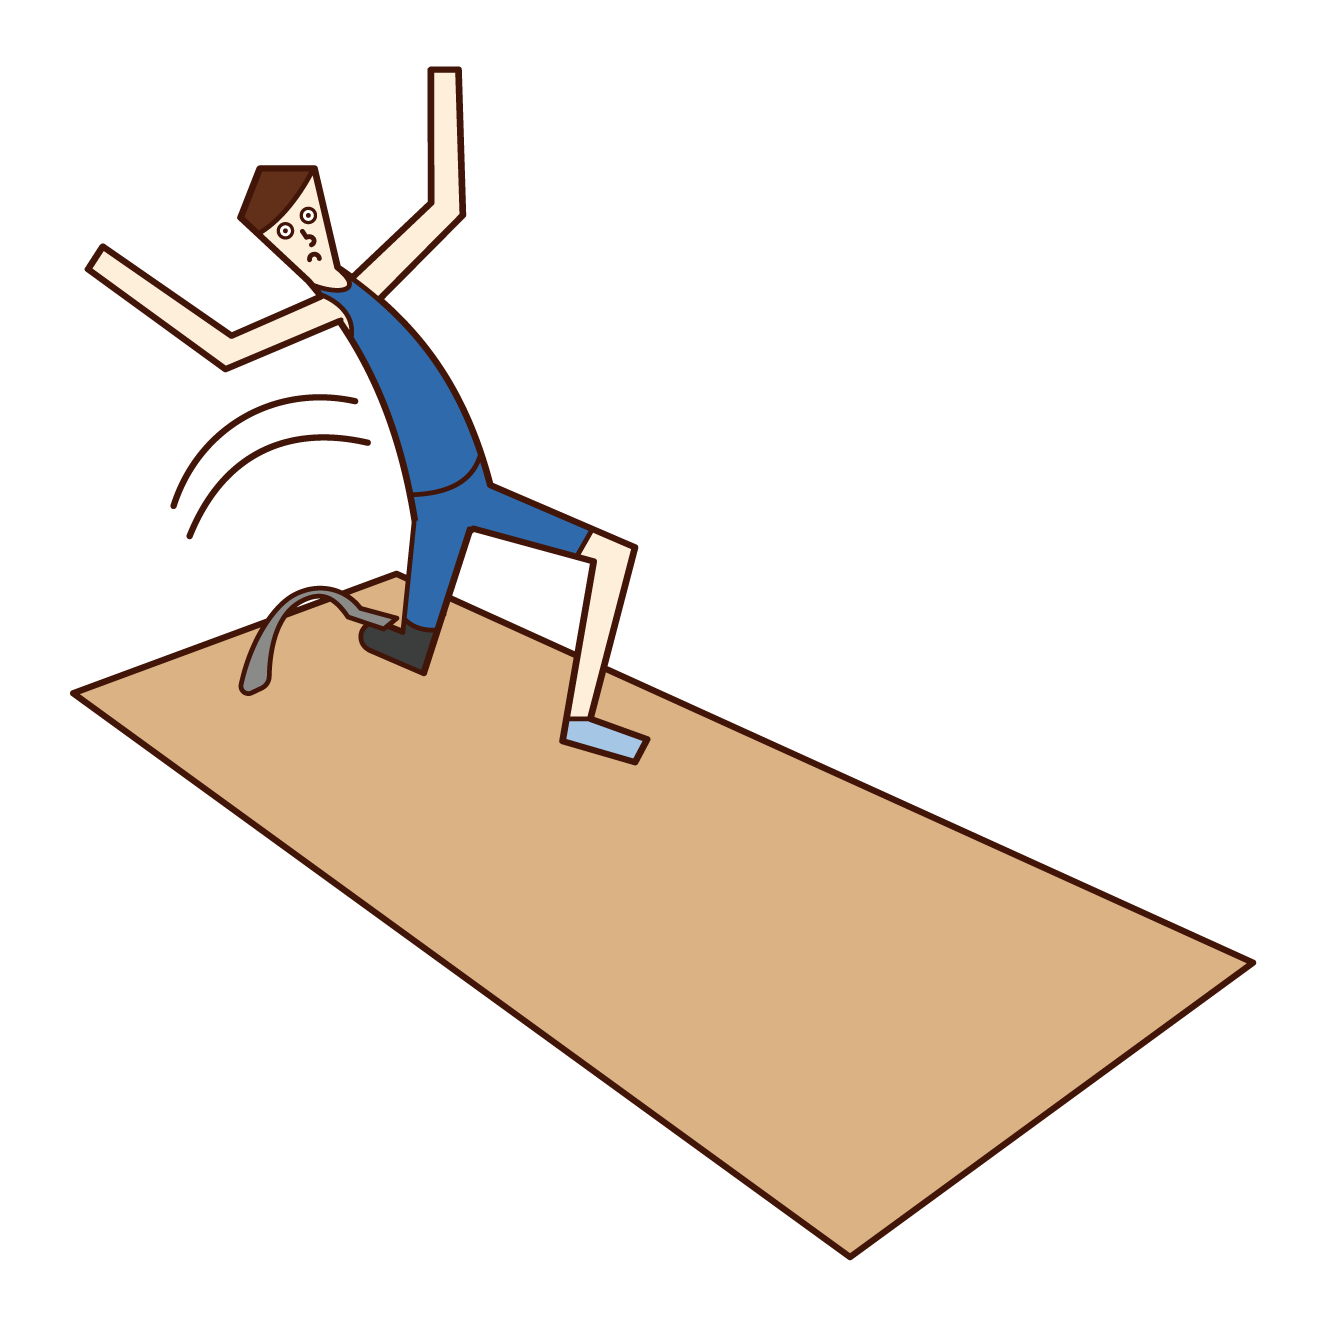 義足を付けた走り幅跳びの選手 男性 のイラスト フリーイラスト素材 Kukukeke ククケケ